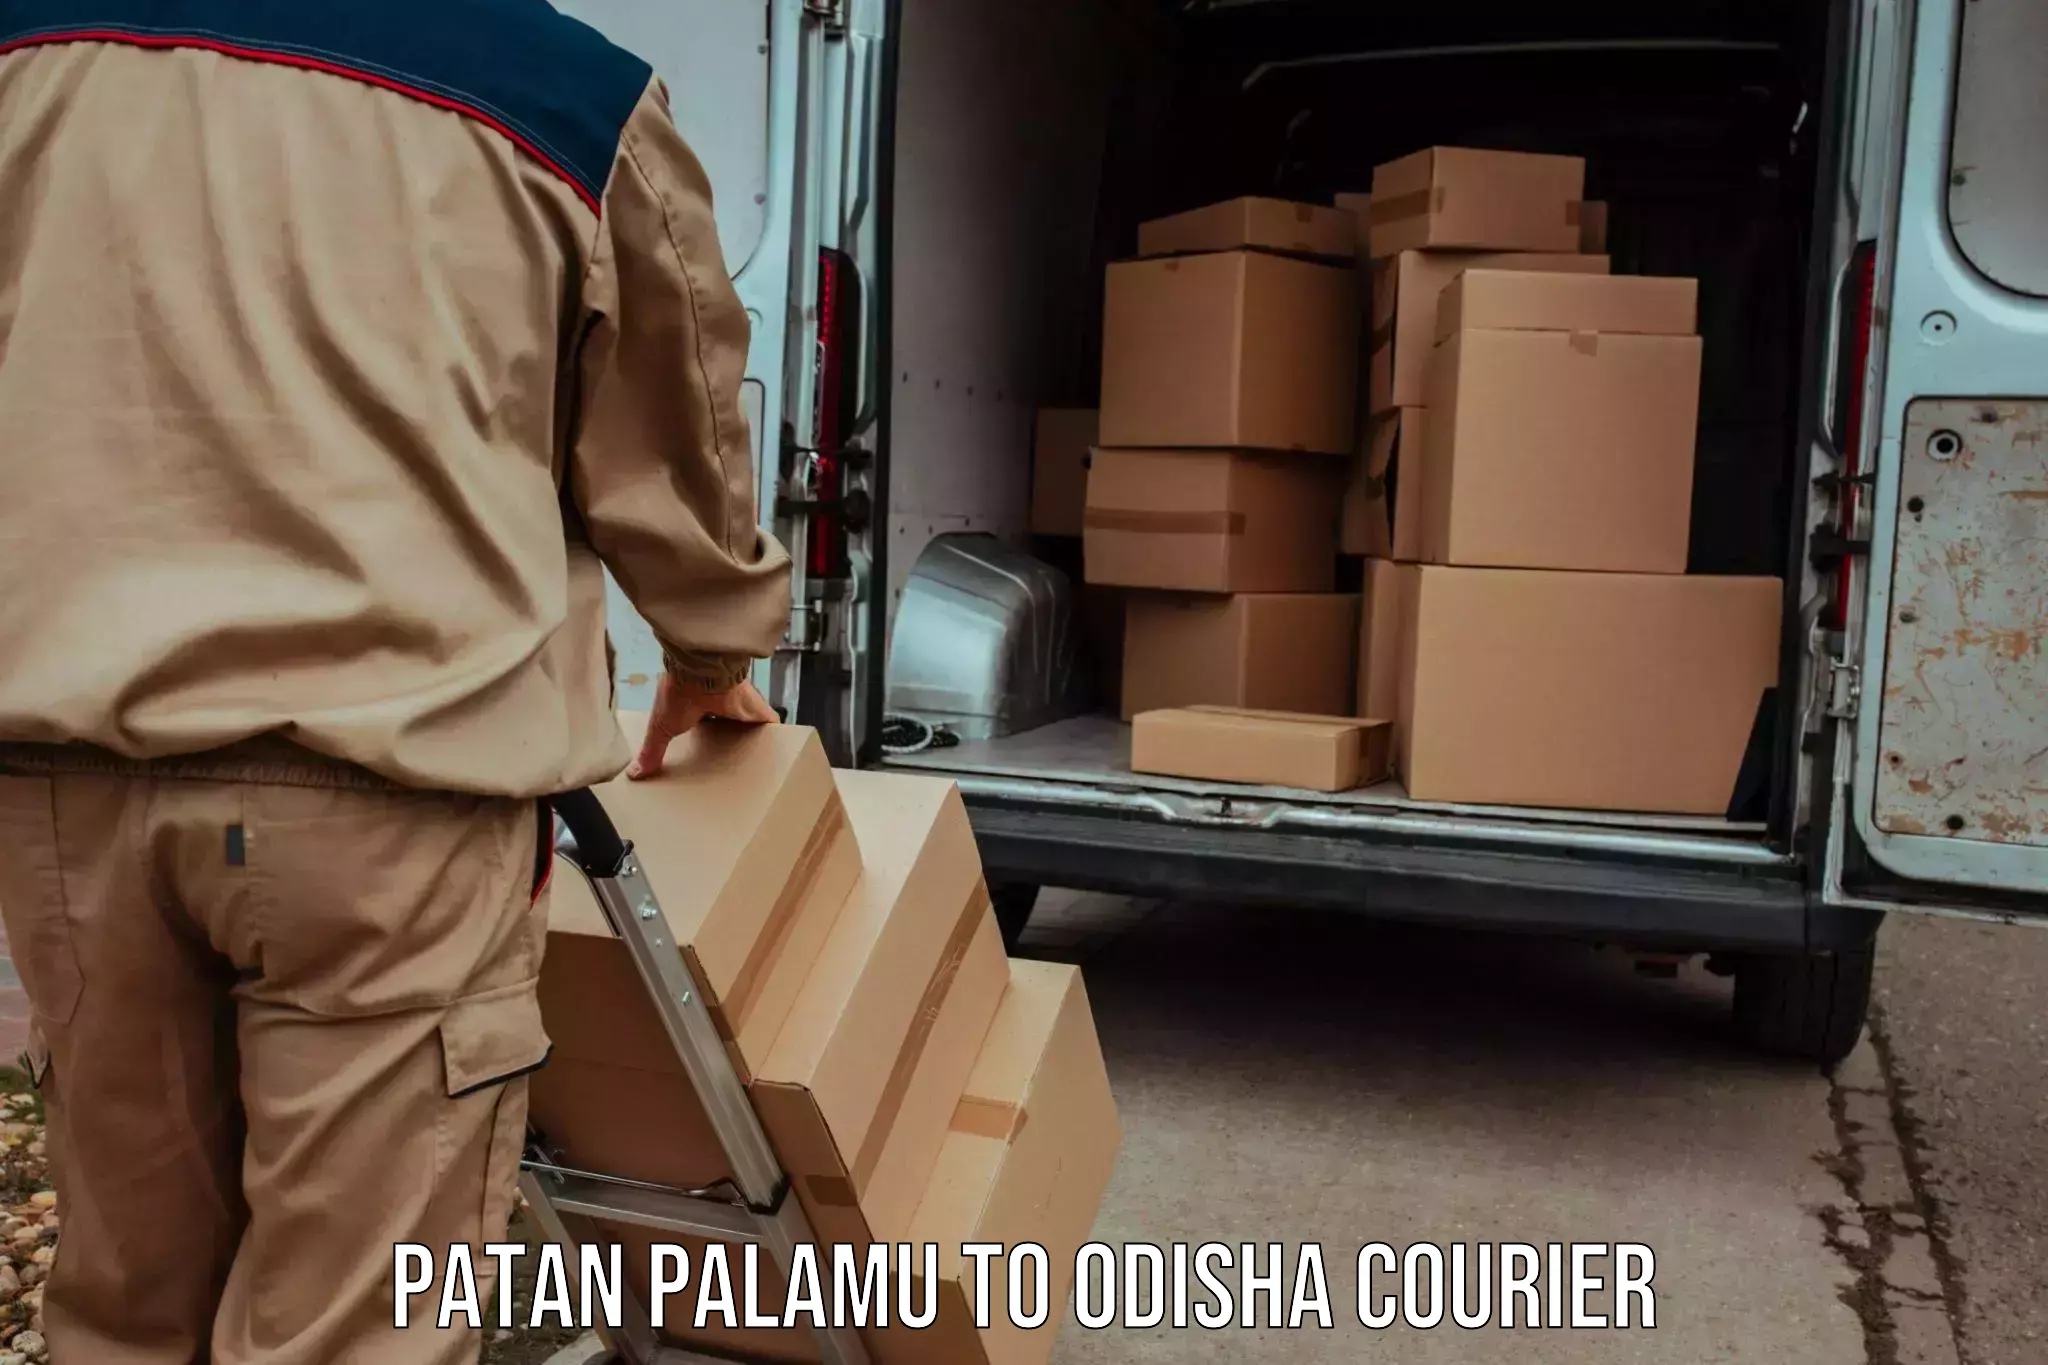 Efficient order fulfillment Patan Palamu to Sinapali